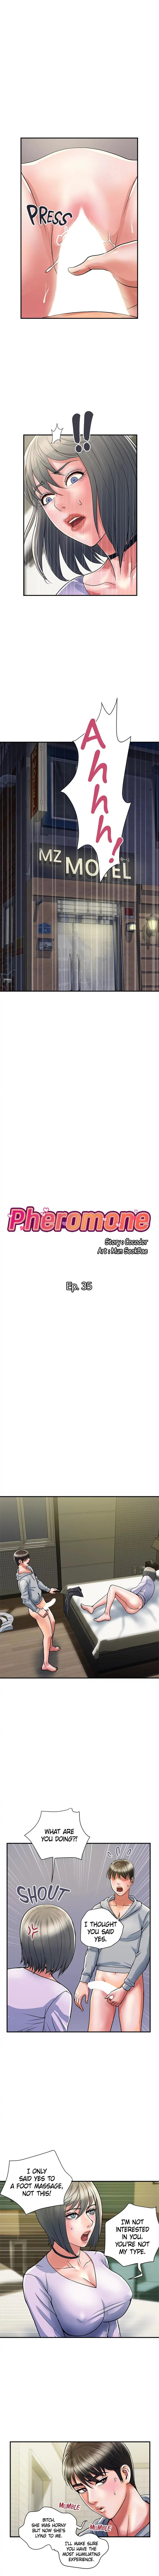 pheromones-chap-35-0